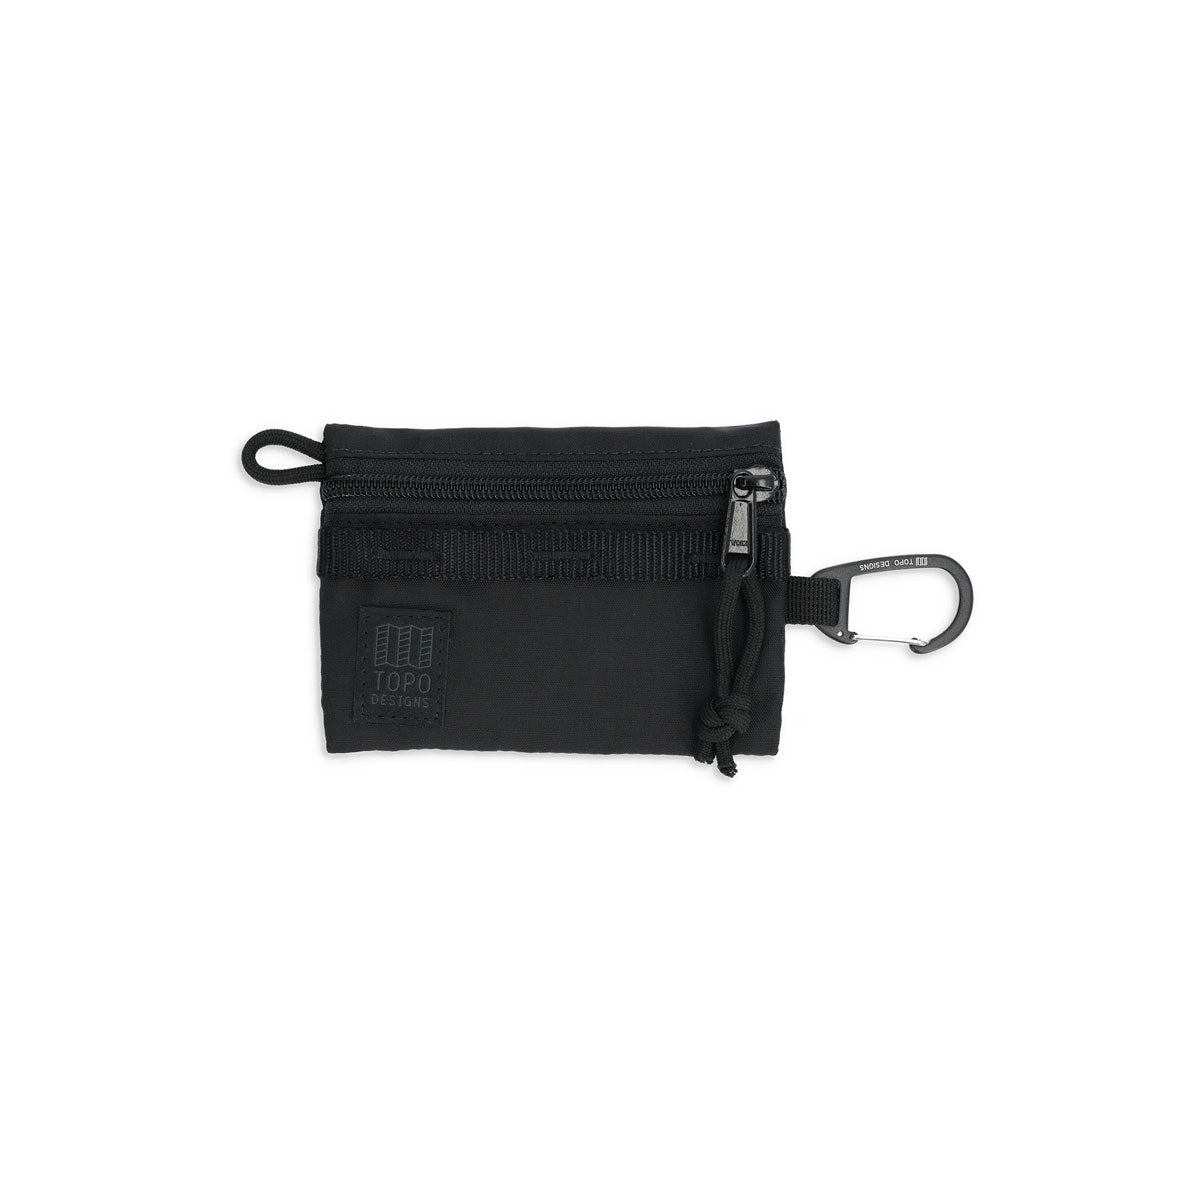 Topo Designs : Mountain Accessory Bag : Black/Black/Black